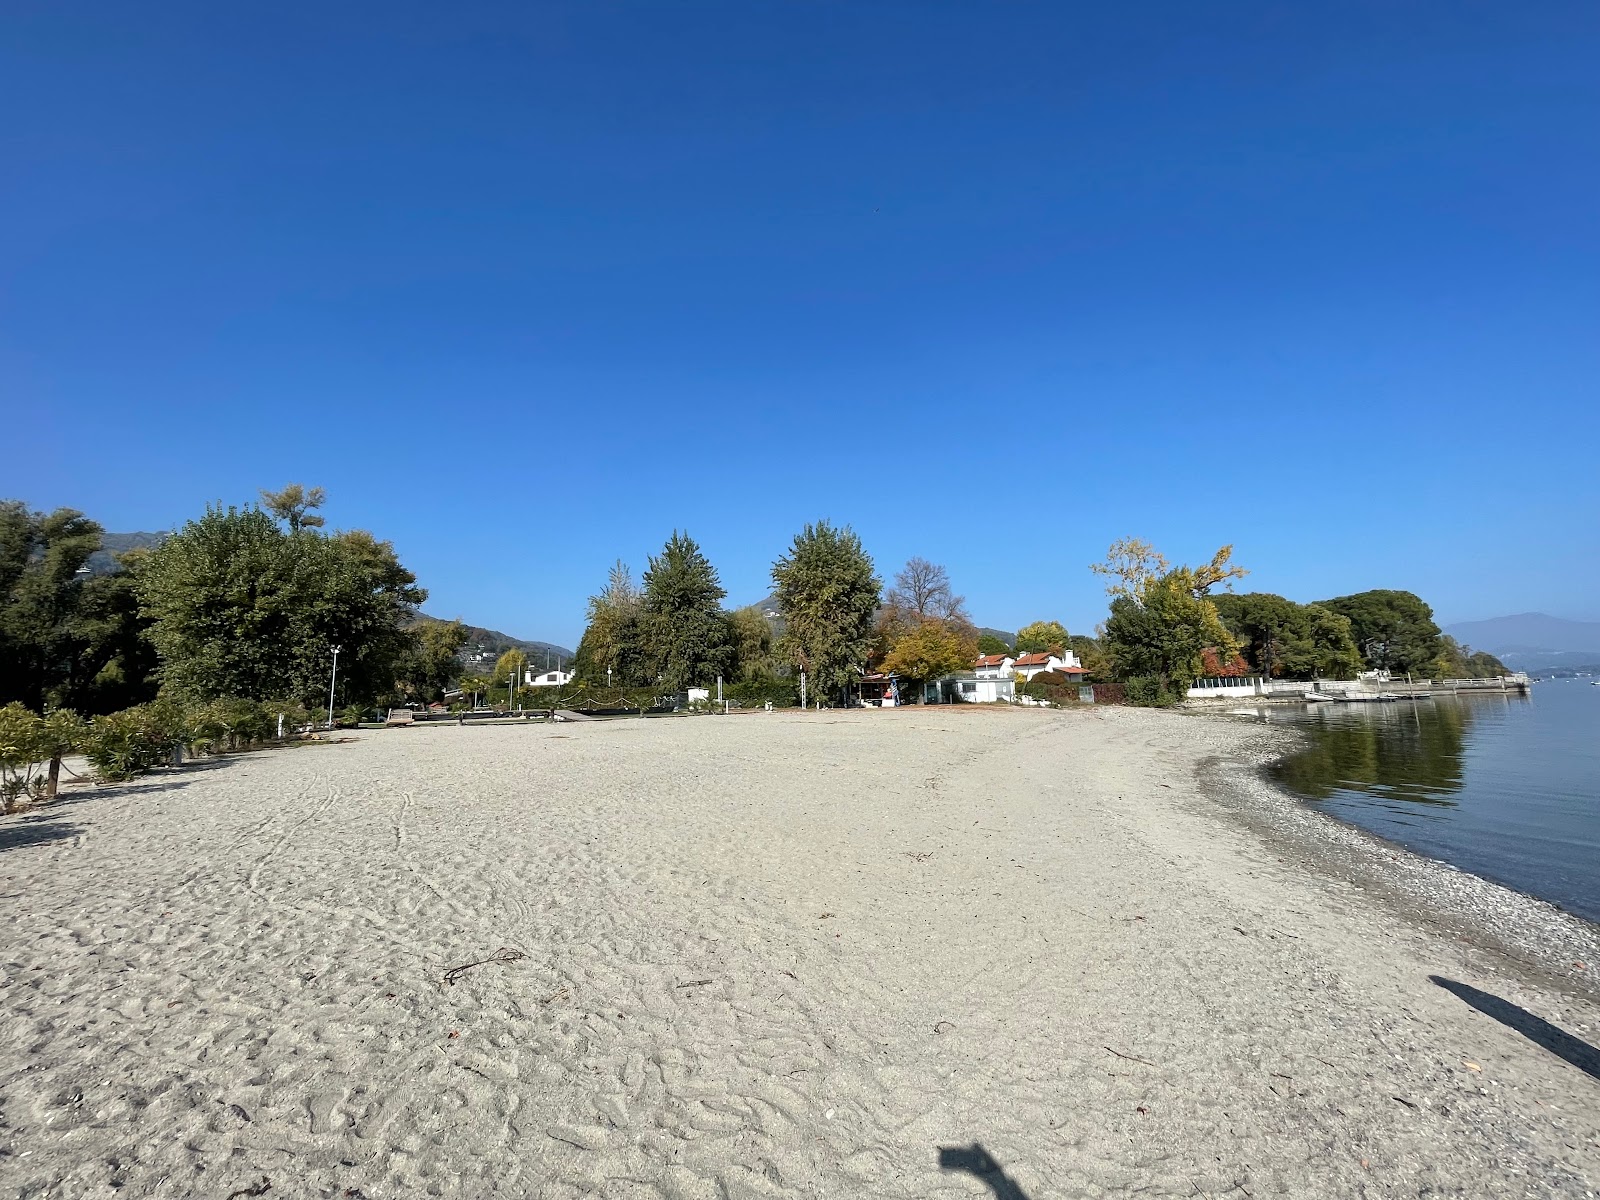 Foto av Spiaggia dell' Erno med hög nivå av renlighet